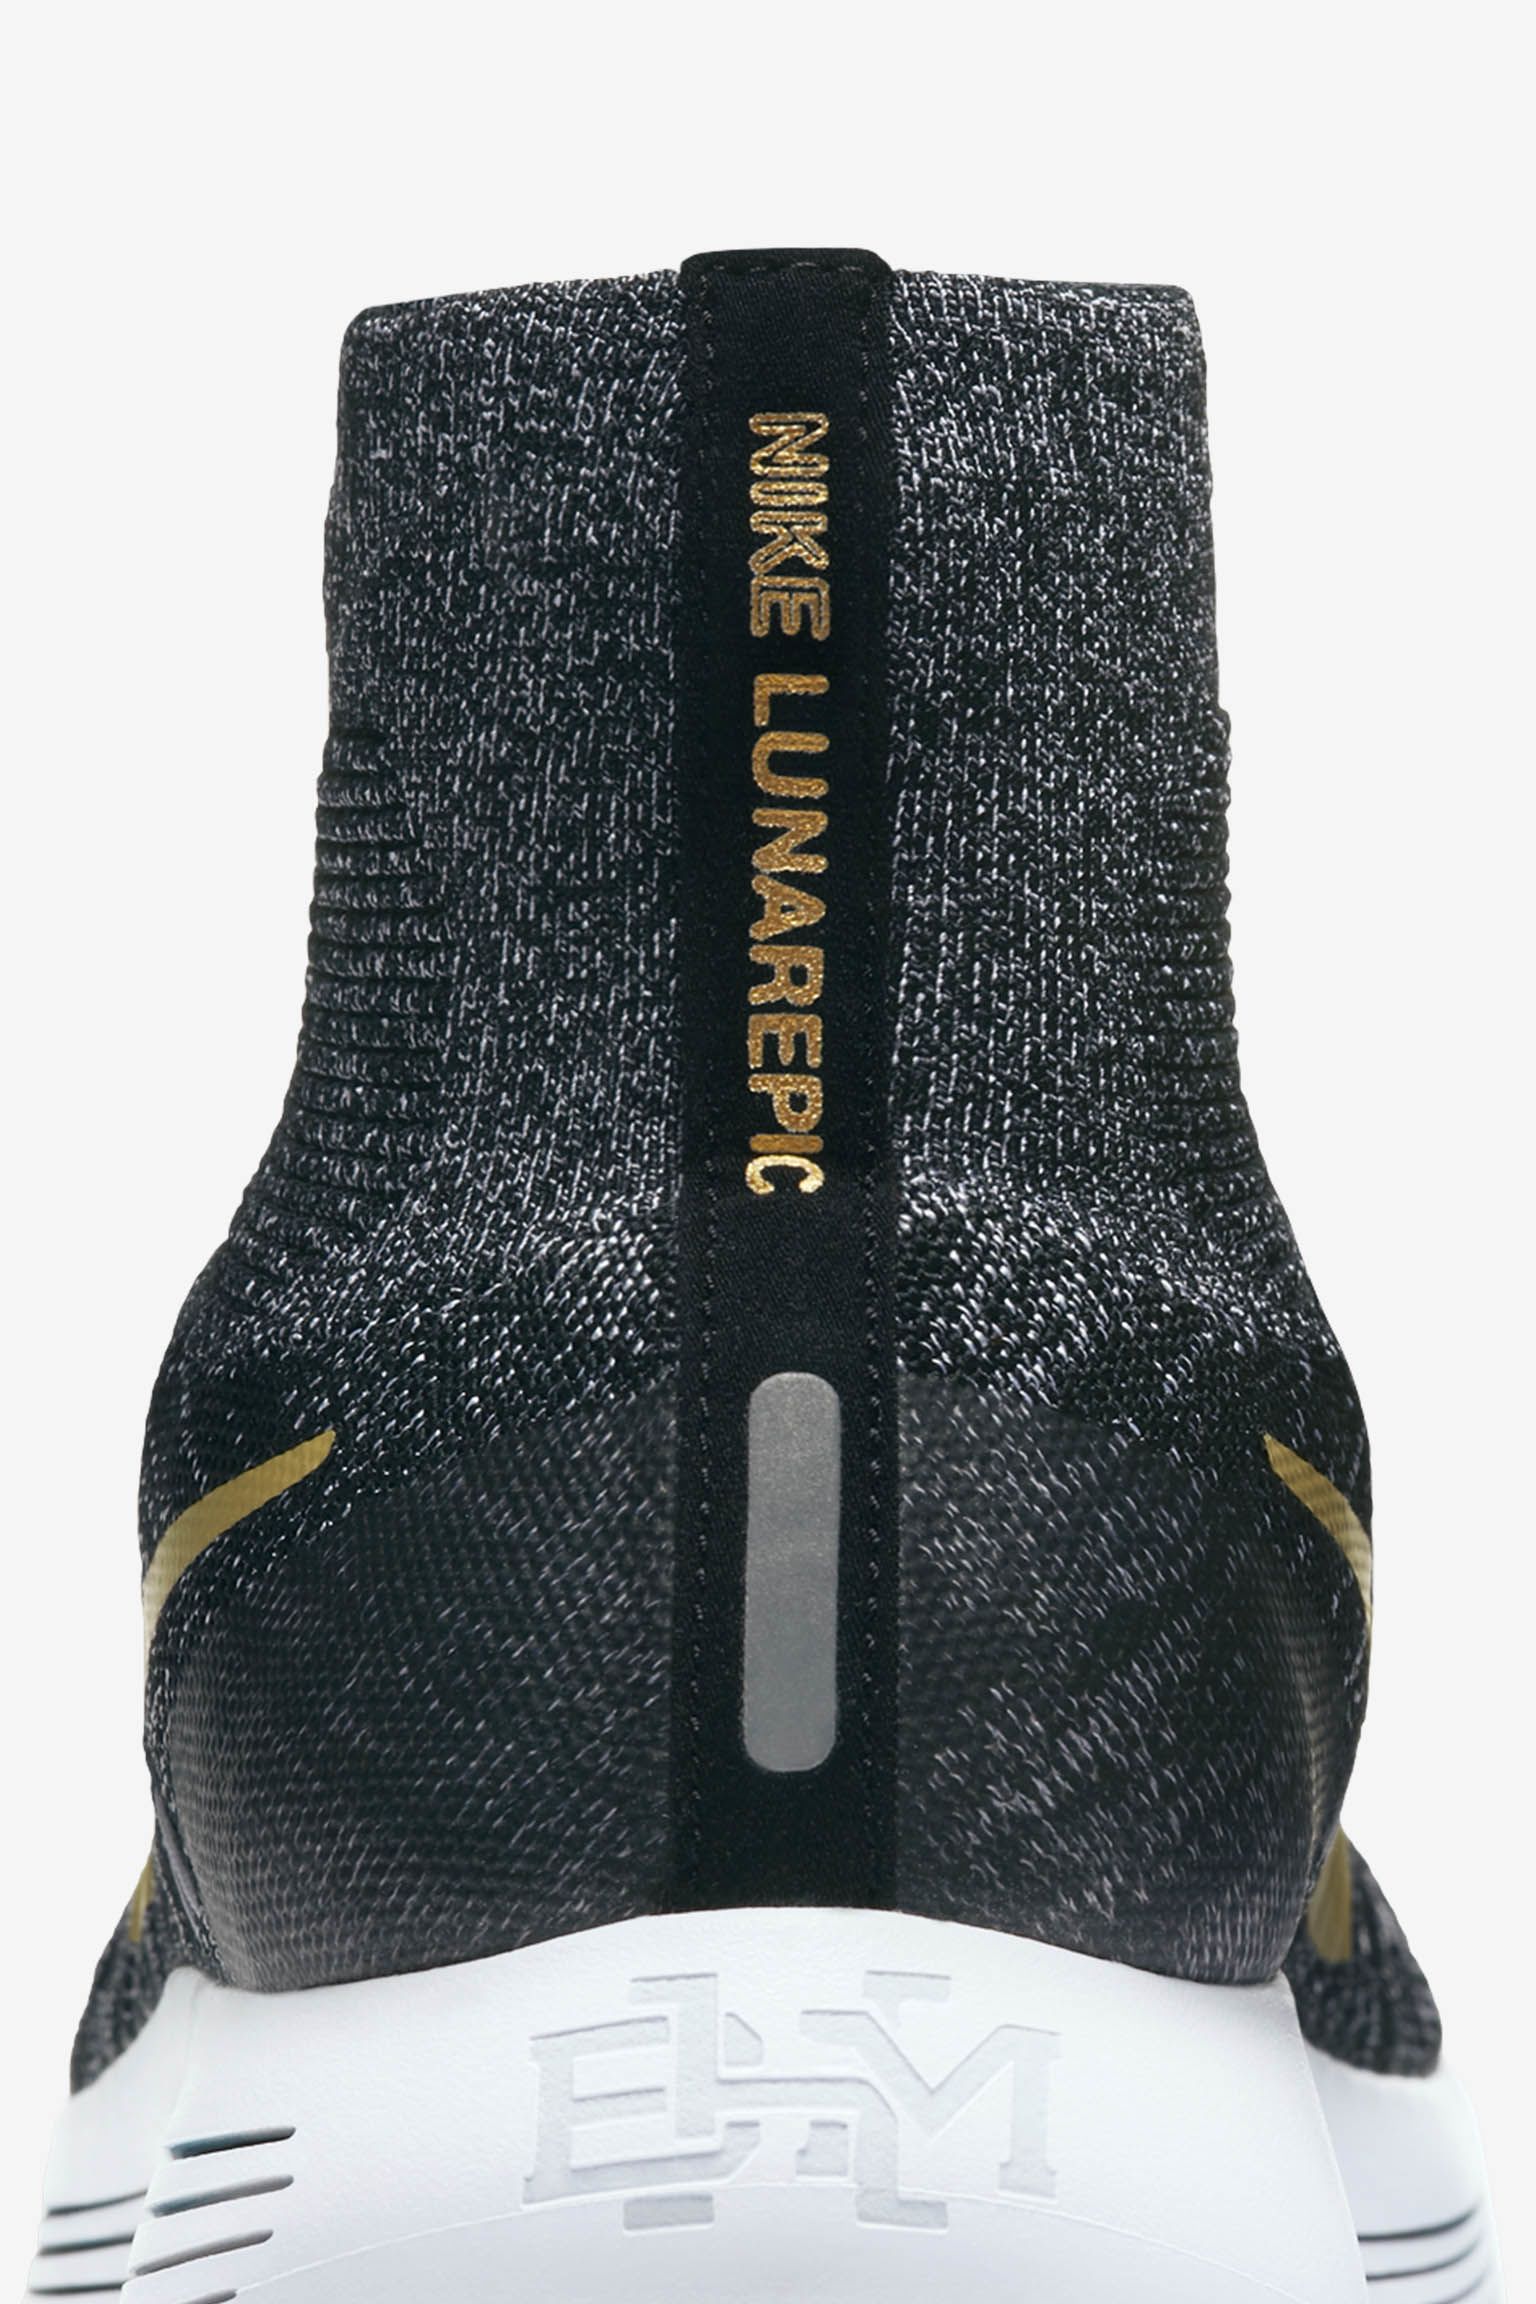 opskrift Nybegynder tilfældig Nike Lunarepic Flyknit BHM 2017. Nike SNKRS